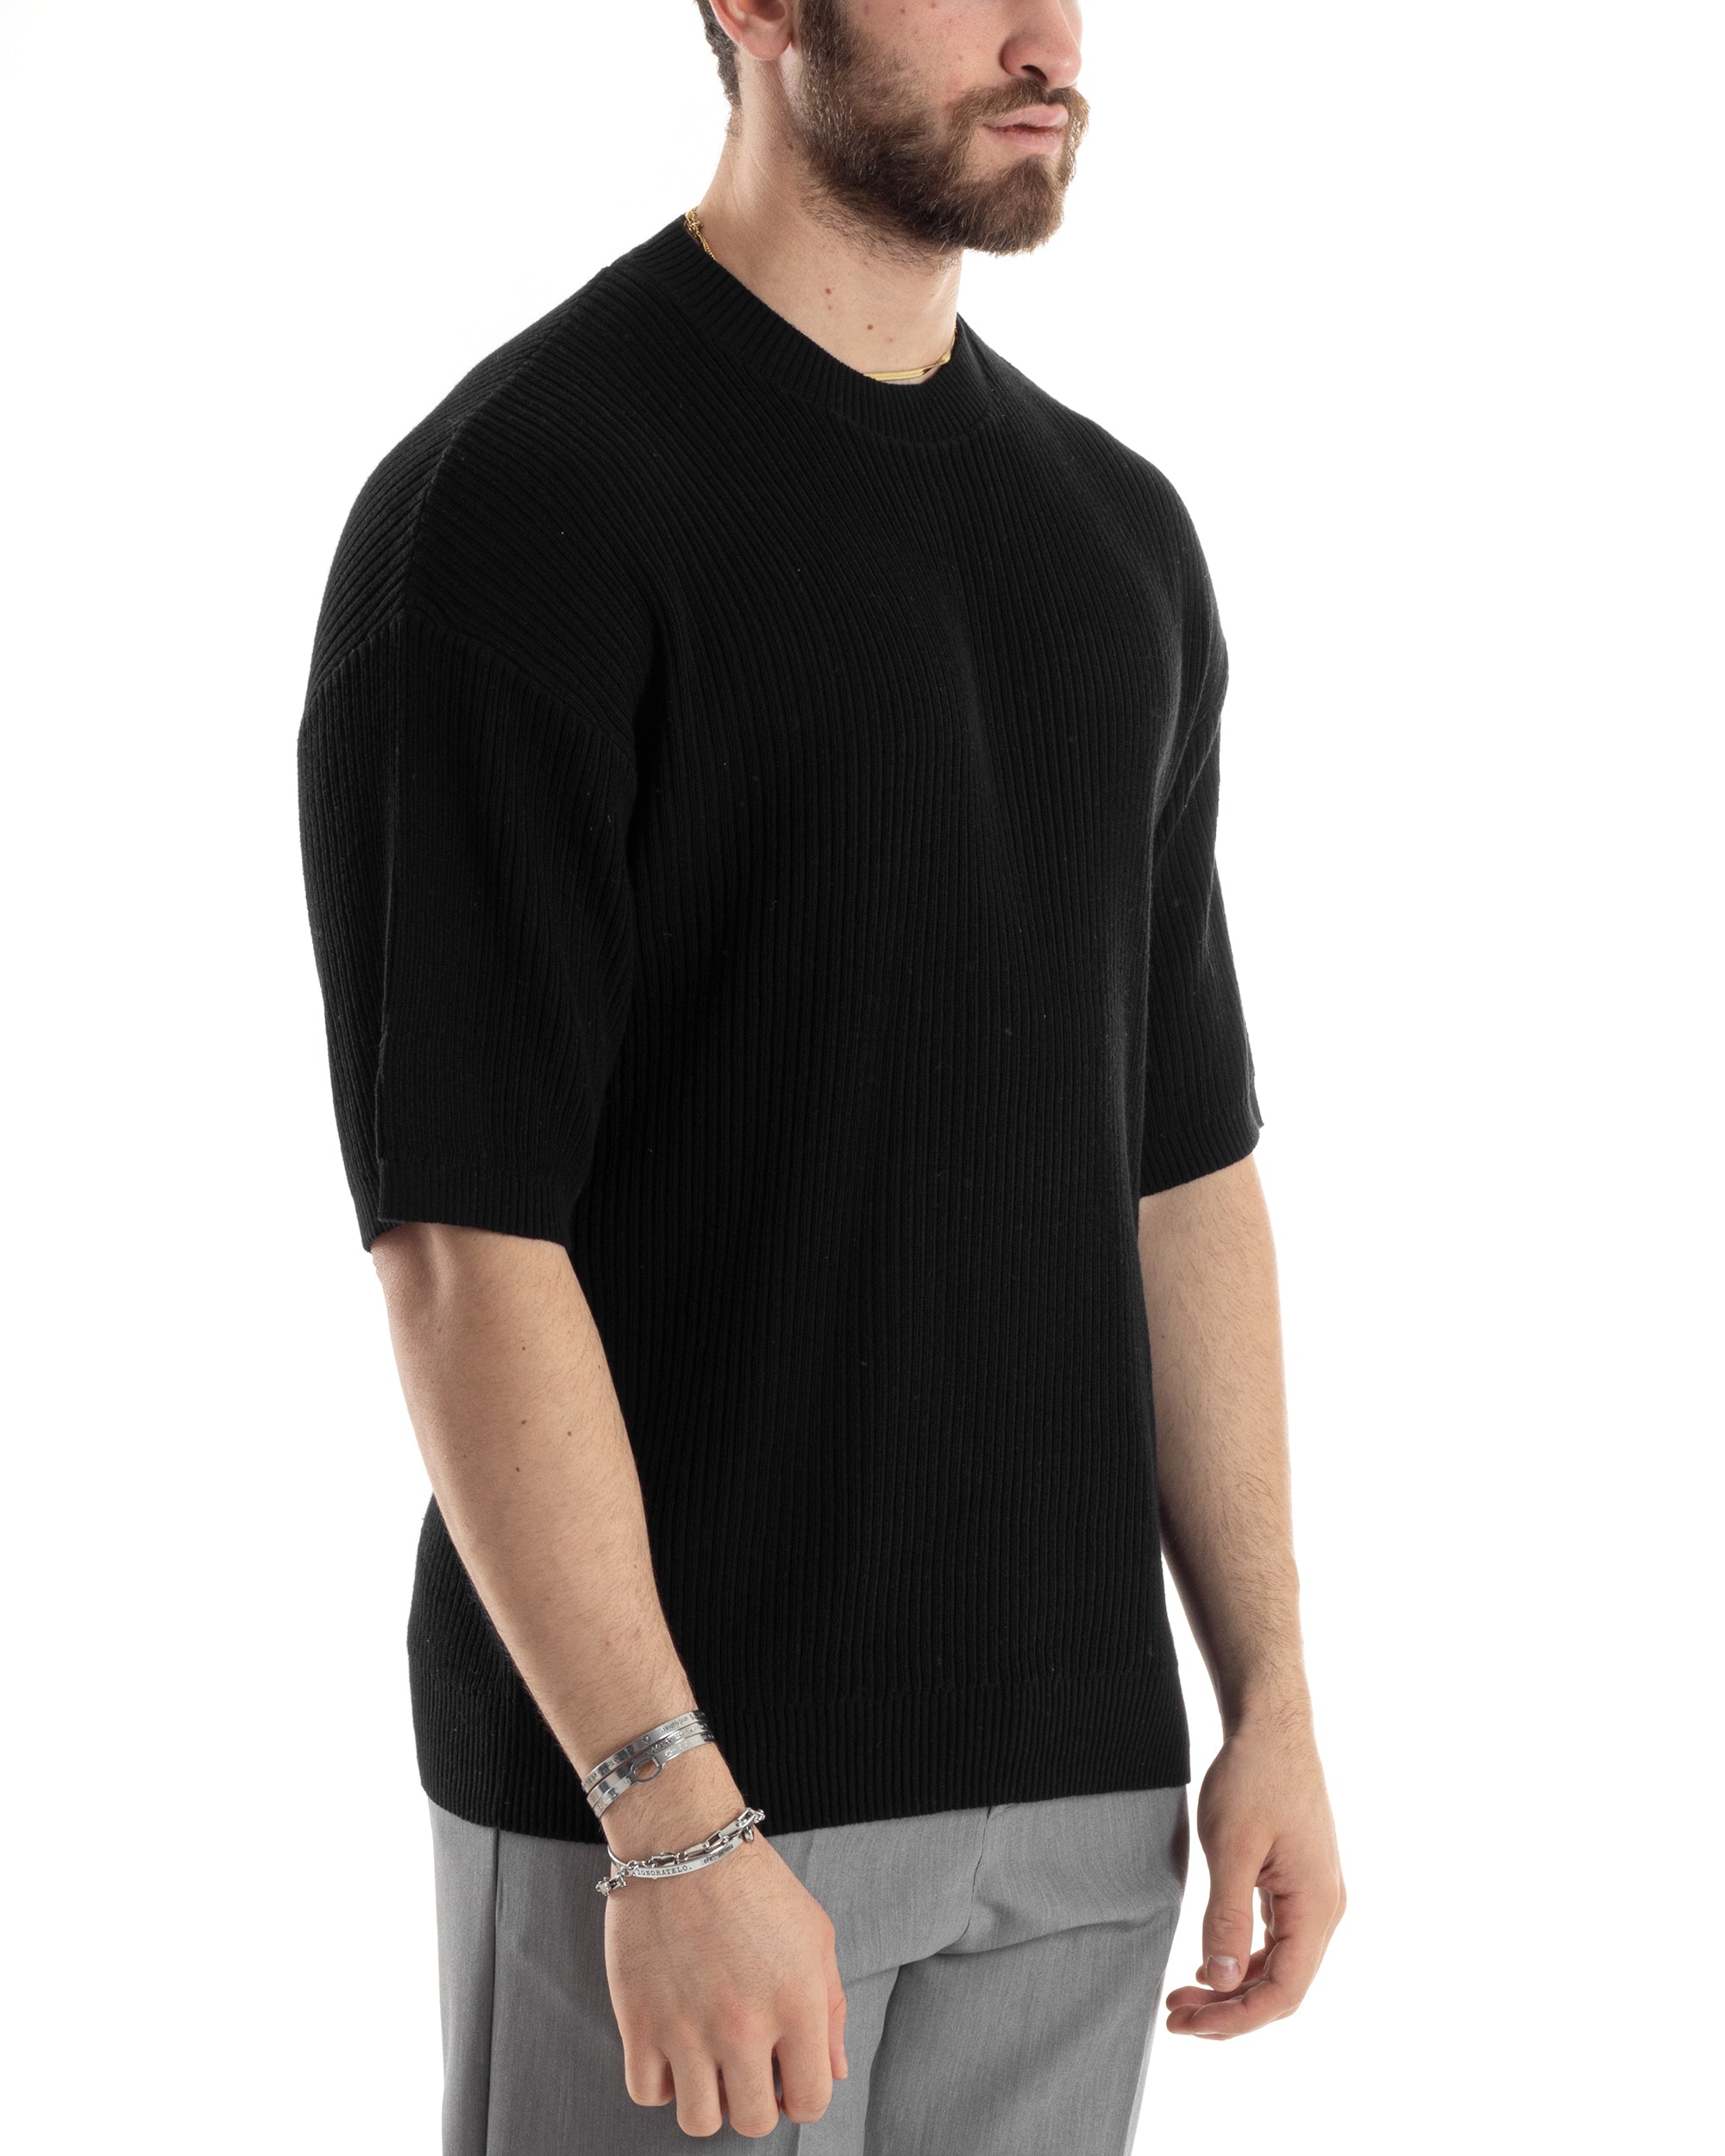 T-shirt Uomo Maglia In Filo A Costine Manica Corta Basic Oversize Nero Casual GIOSAL-TS2999A